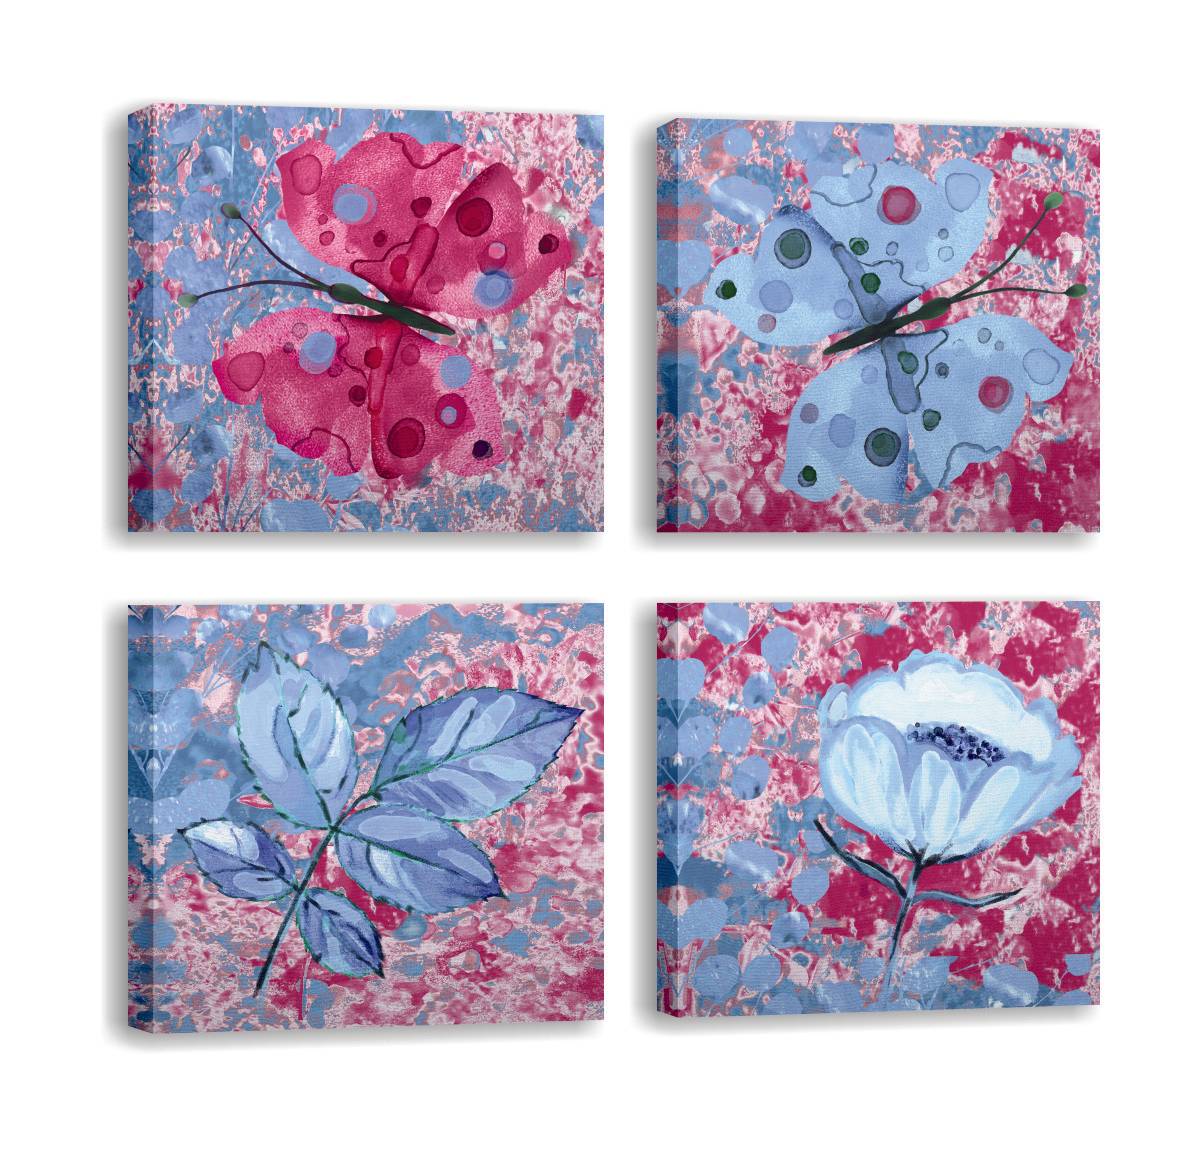 Kavel van 4 Pictura-schilderijen 30x30cm Blauw en Fuchsia Vlinder- en bloemenmotief